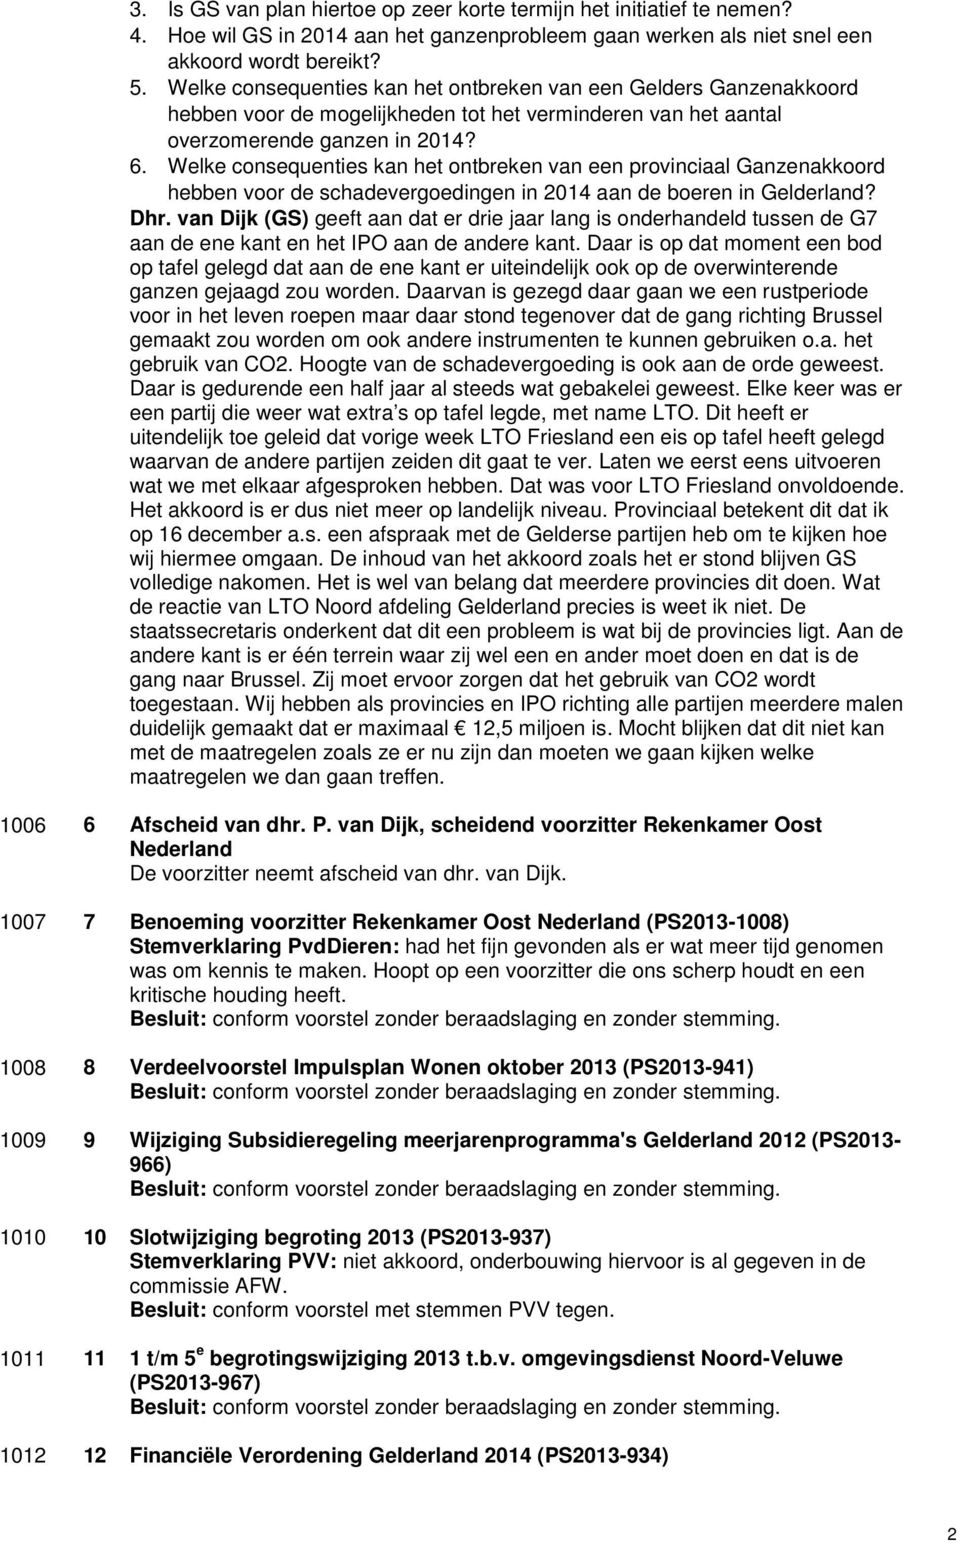 Welke consequenties kan het ontbreken van een provinciaal Ganzenakkoord hebben voor de schadevergoedingen in 2014 aan de boeren in Gelderland? Dhr.